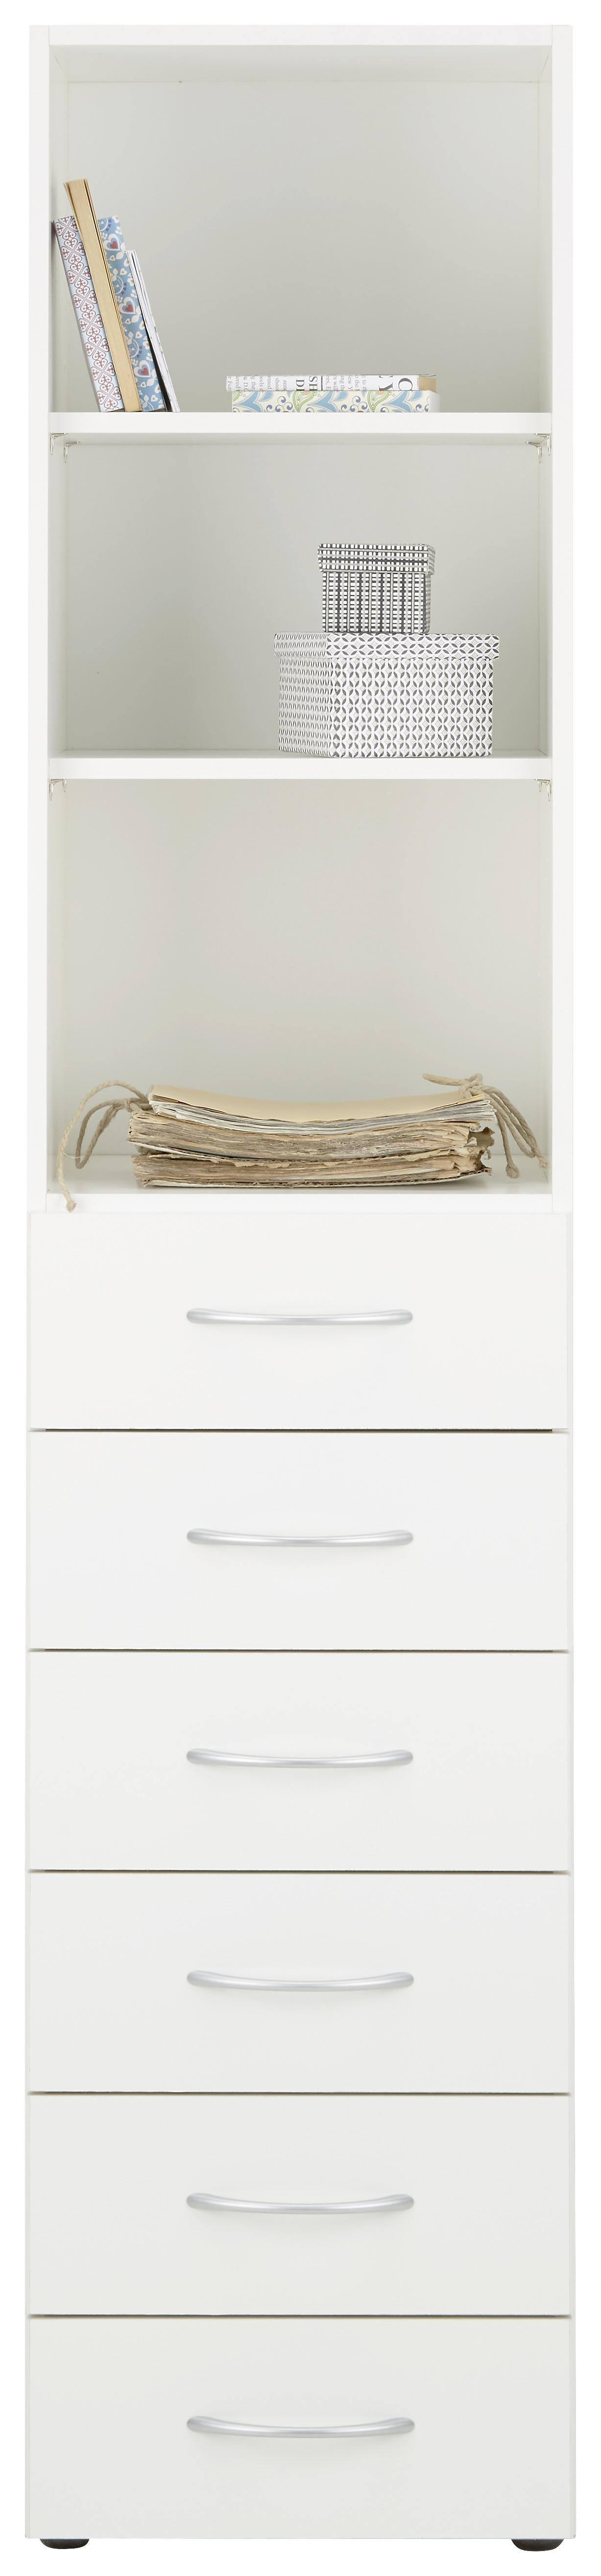 Víceúčelová Skříň Mrk - bílá/barvy hliníku, Konvenční, kompozitní dřevo/plast (40/185/40cm) - Modern Living